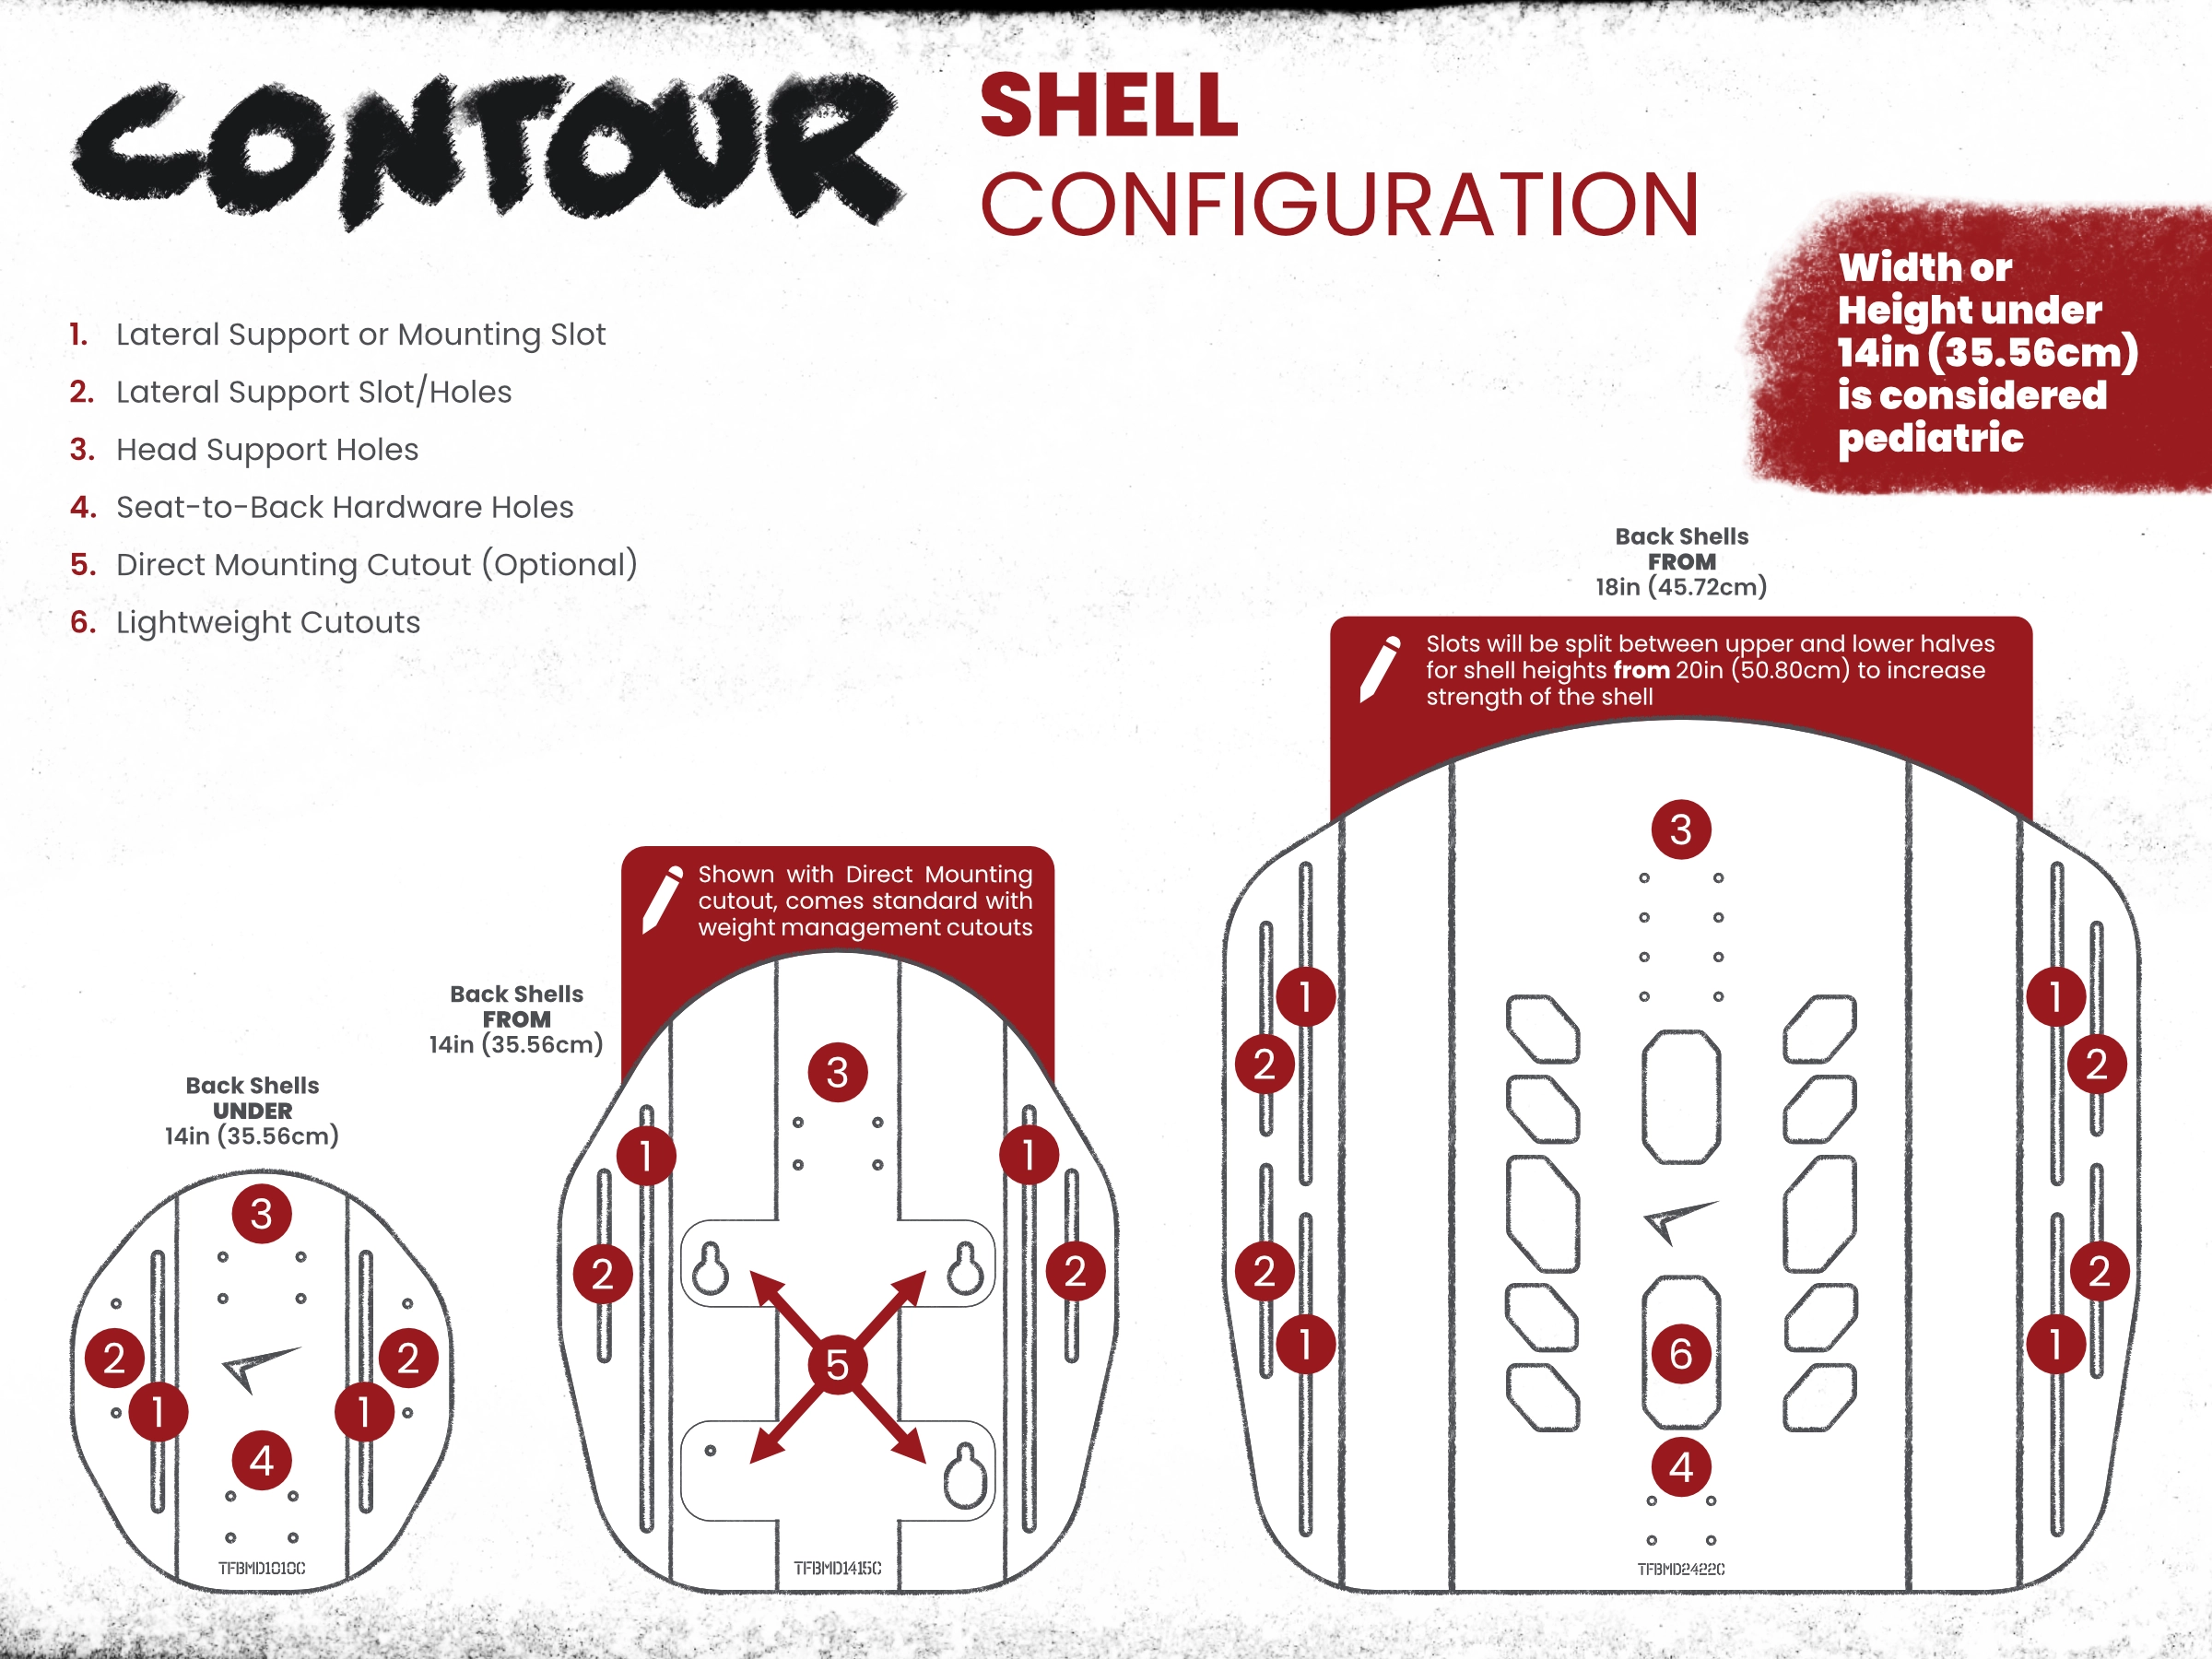 Contour Active shell configurations